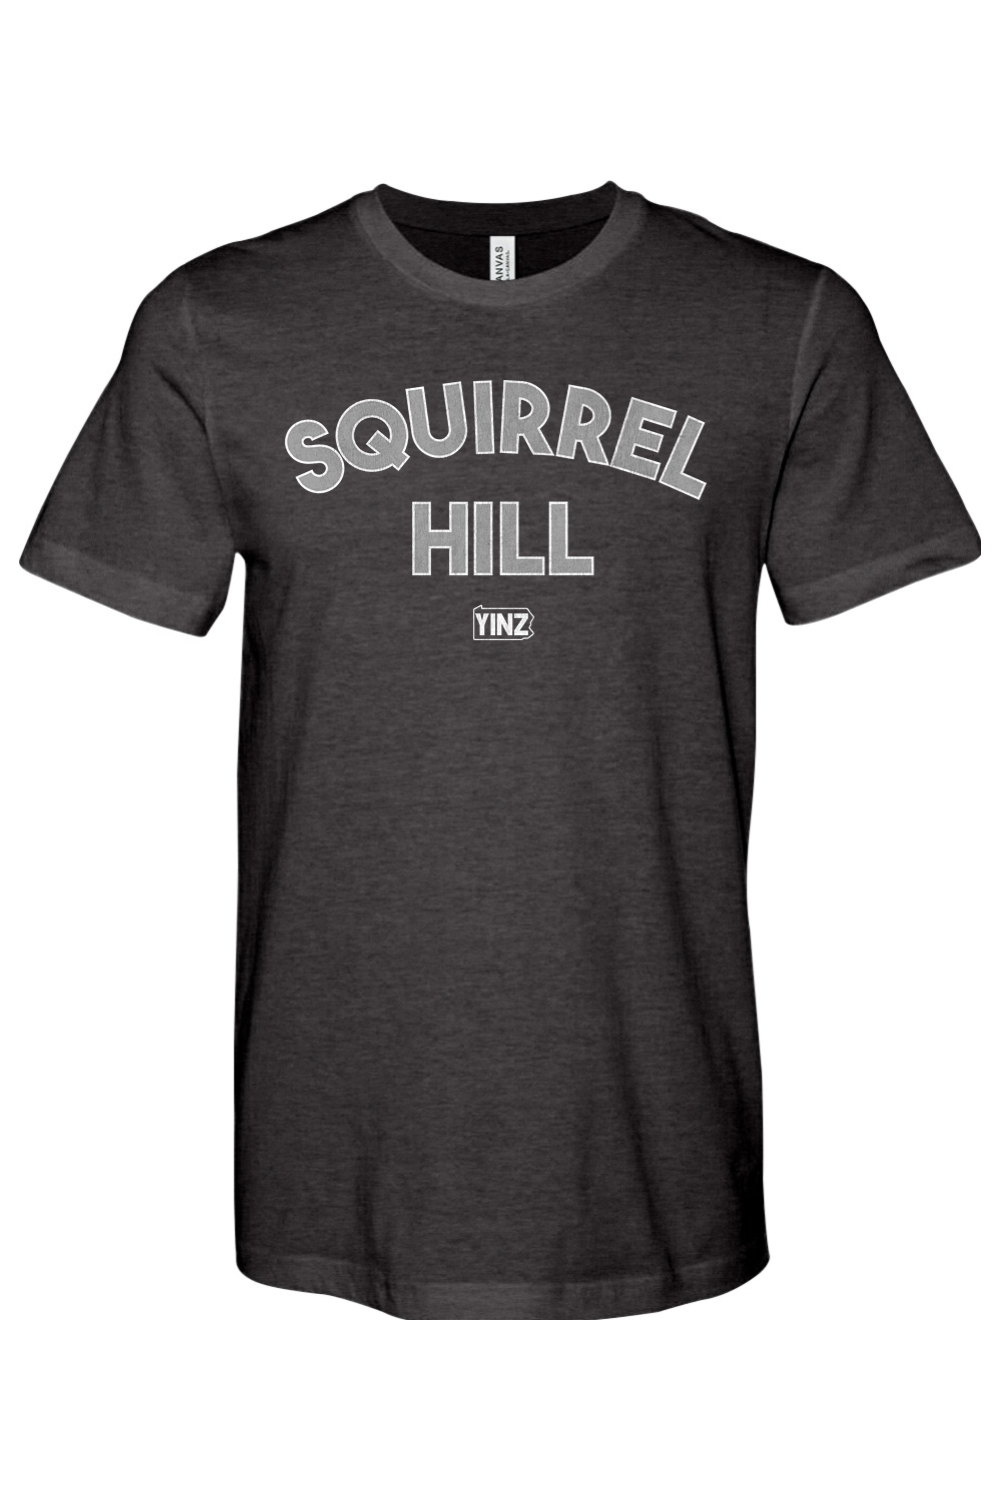 Squirrel Hill Yinzylvania - Yinzylvania